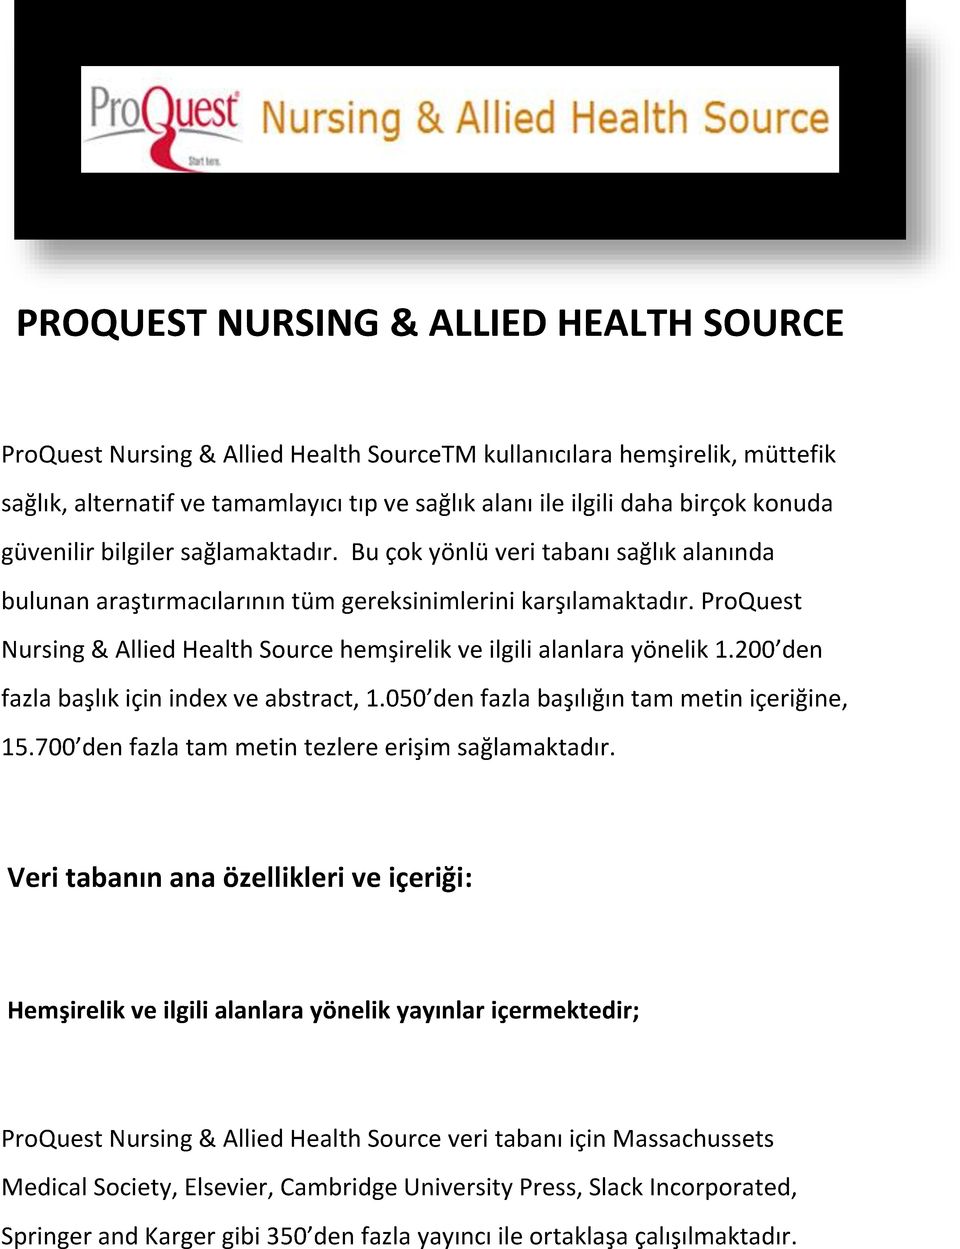 ProQuest Nursing & Allied Health Source hemşirelik ve ilgili alanlara yönelik 1.200 den fazla başlık için index ve abstract, 1.050 den fazla başılığın tam metin içeriğine, 15.